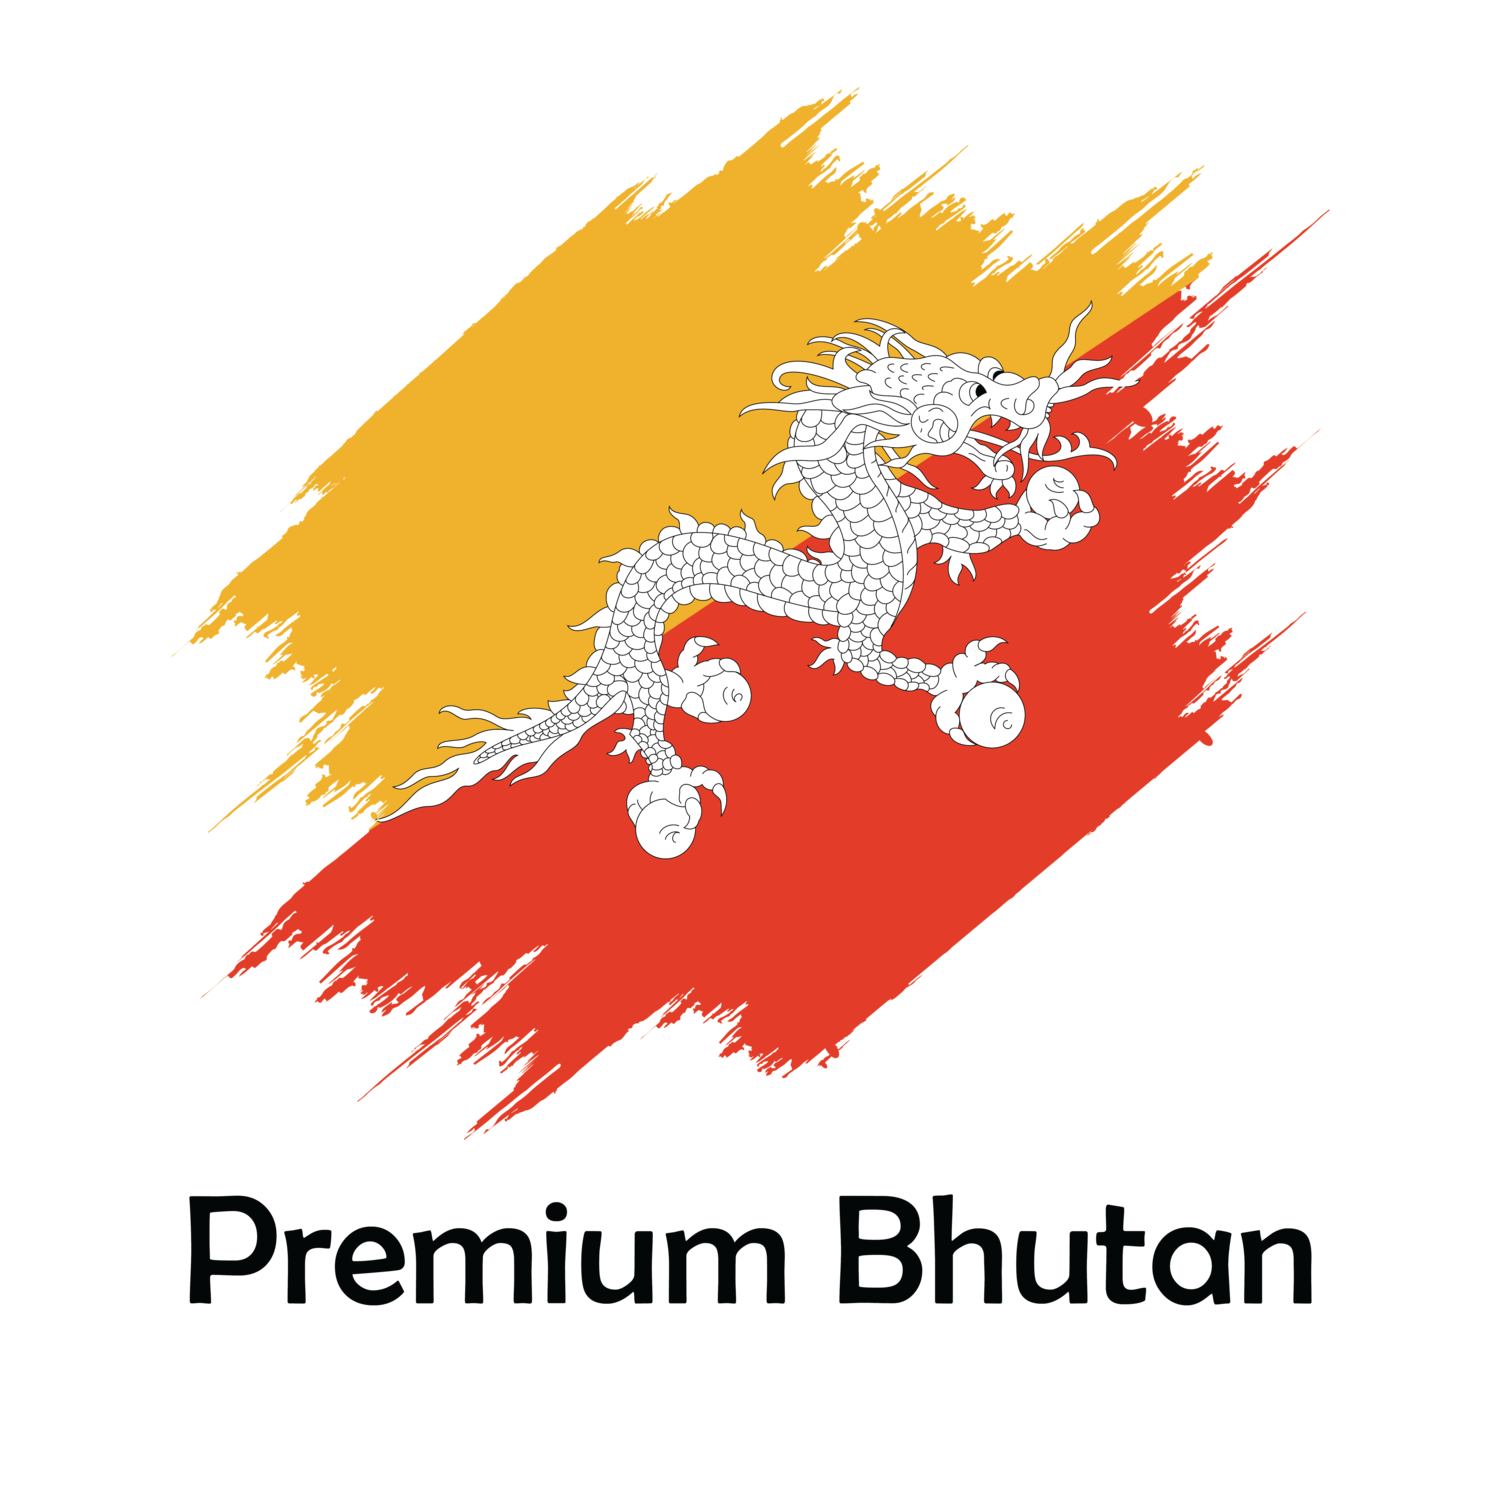 Premium Bhutan